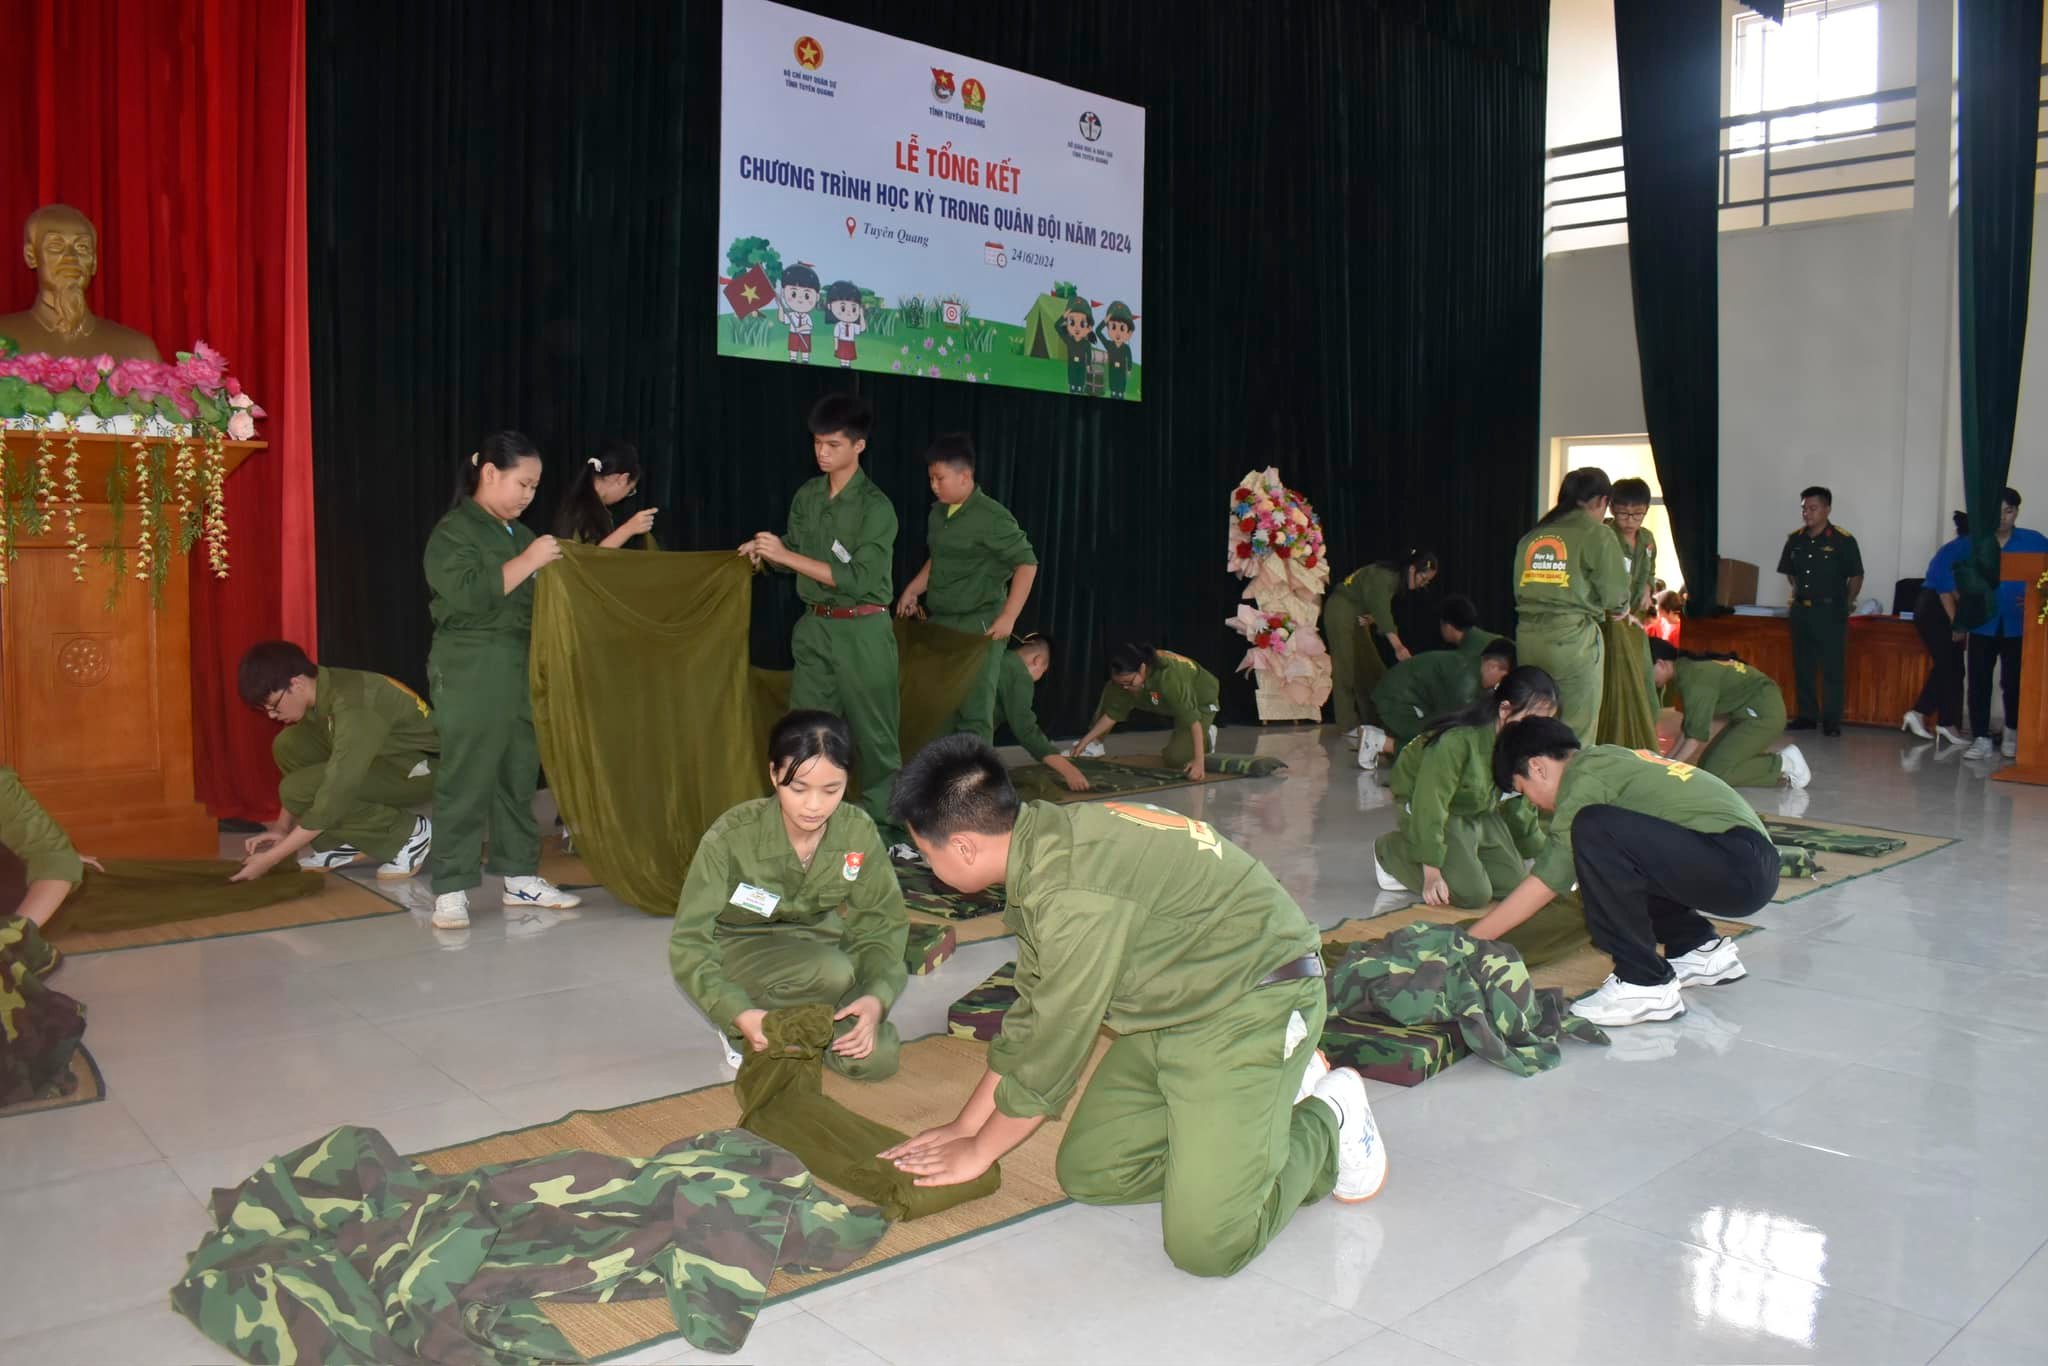 Tổng kết chương trình Học kỳ trong quân đội tỉnh Tuyên Quang đợt 1, năm 2024